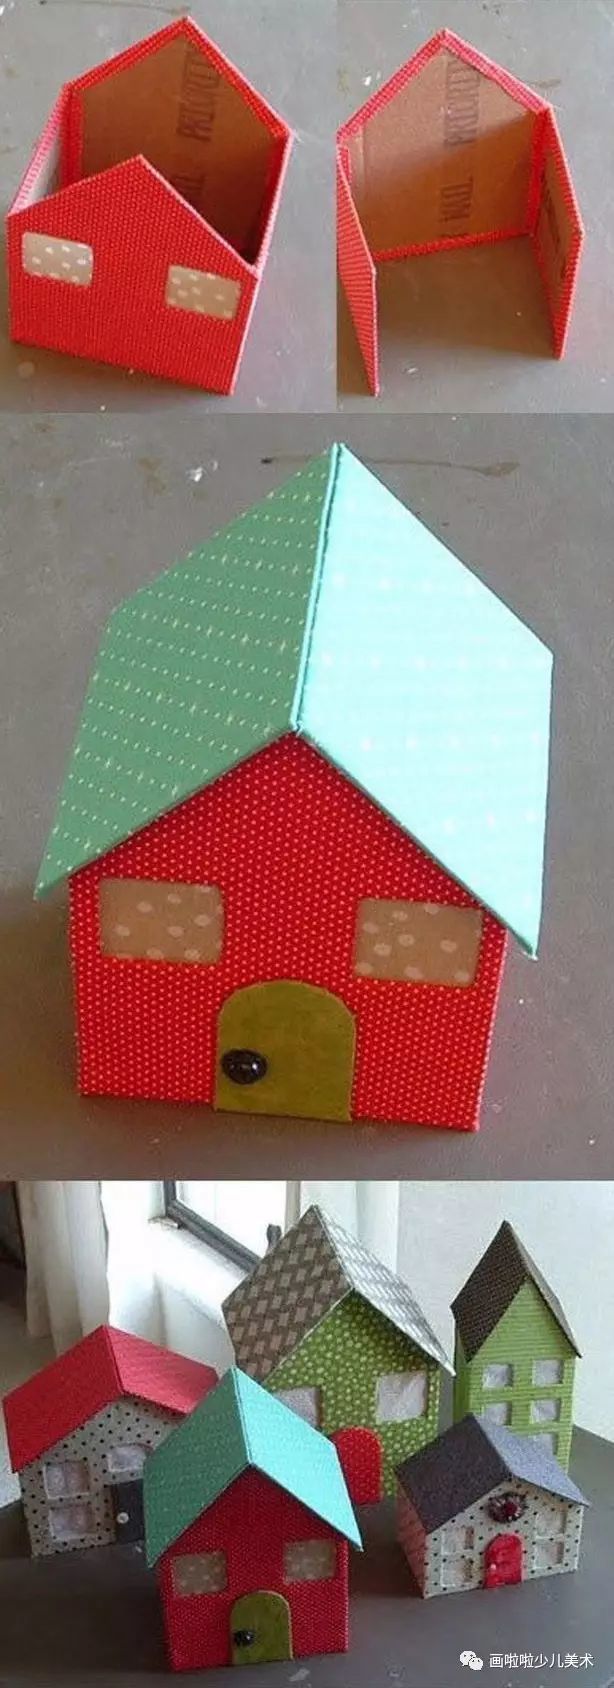 如果有小纸盒,可以买一些卡纸回来,在卡纸上画出房子的门口,窗户